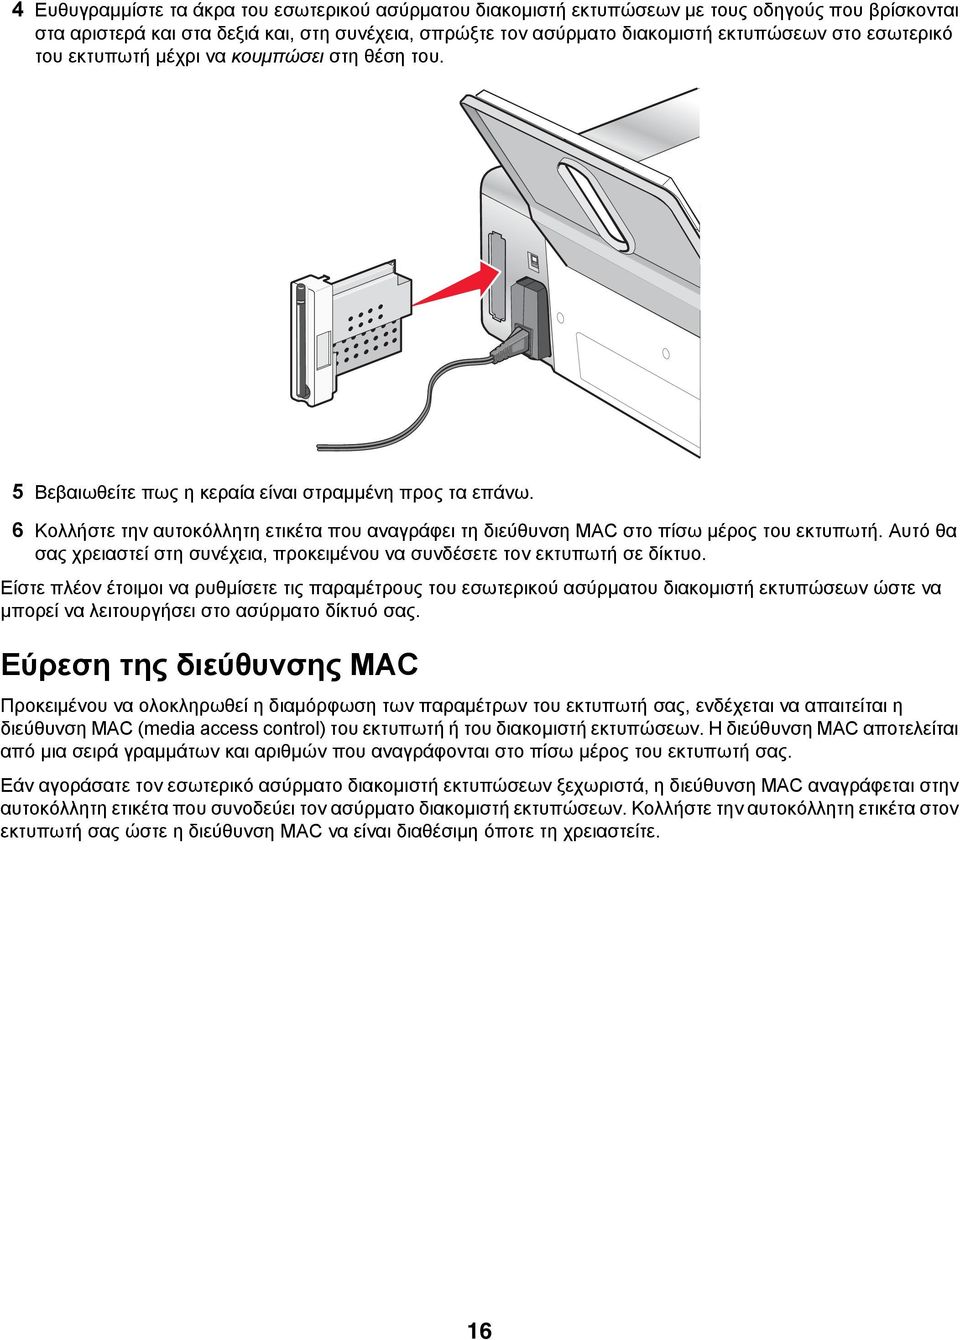 6 Κολλήστε την αυτοκόλλητη ετικέτα που αναγράφει τη διεύθυνση MAC στο πίσω μέρος του εκτυπωτή. Αυτό θα σας χρειαστεί στη συνέχεια, προκειμένου να συνδέσετε τον εκτυπωτή σε δίκτυο.